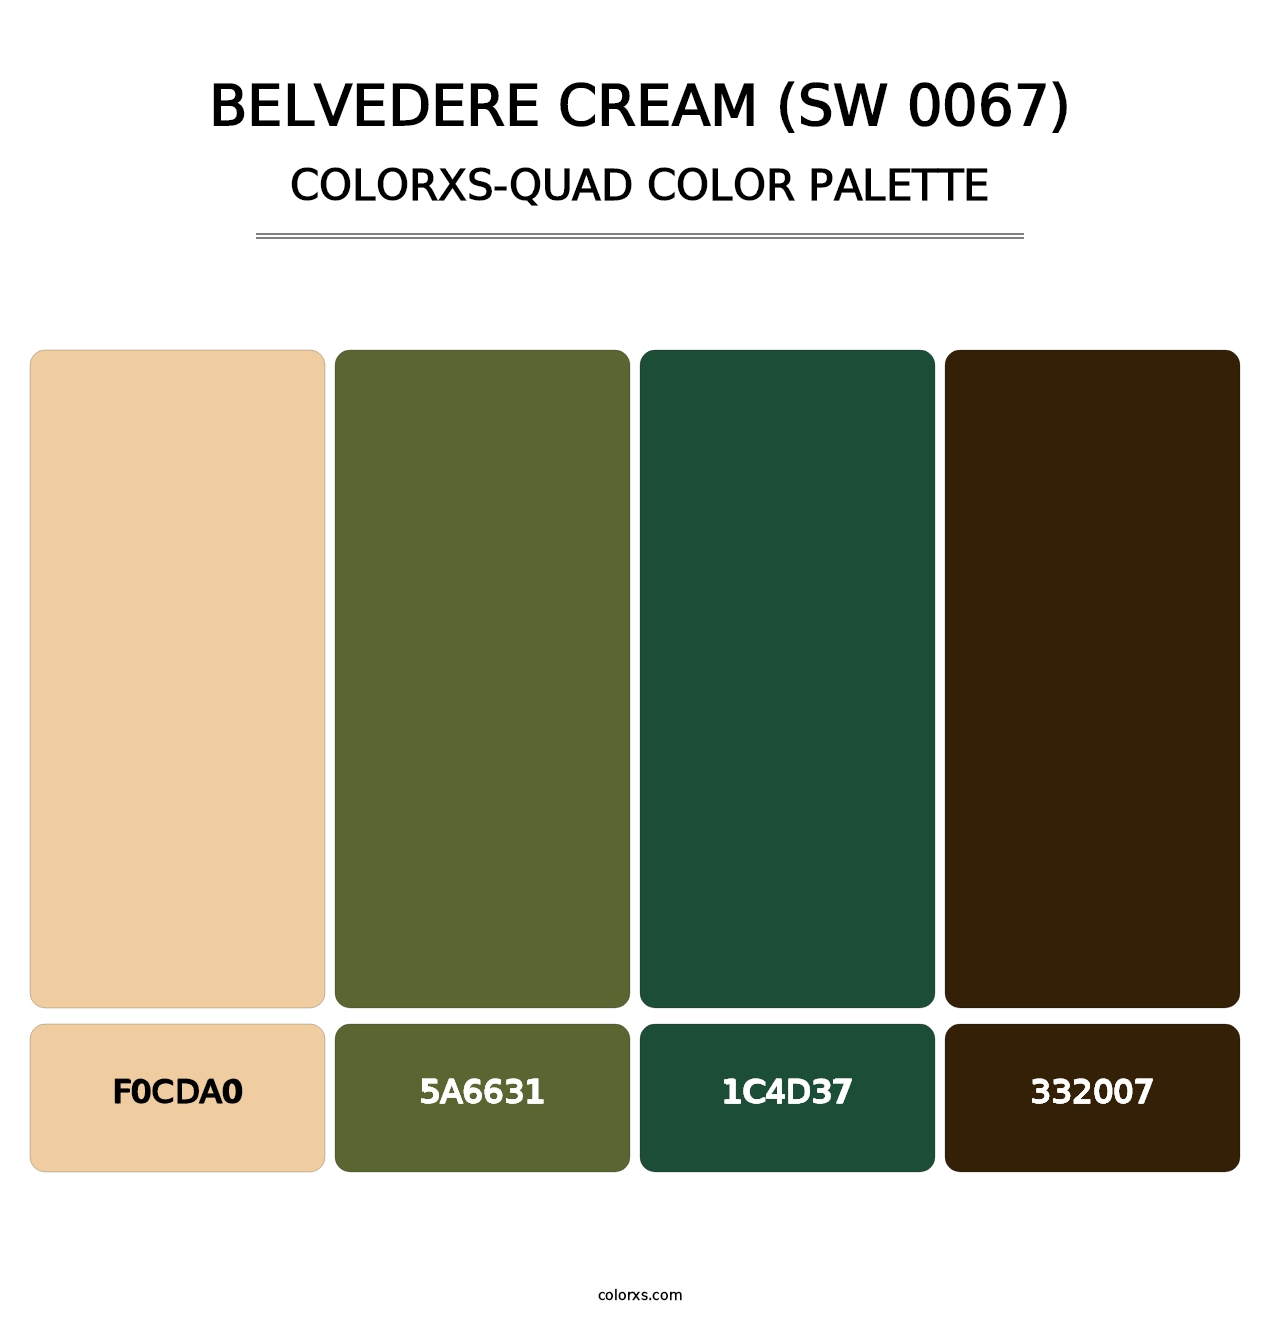 Belvedere Cream (SW 0067) - Colorxs Quad Palette